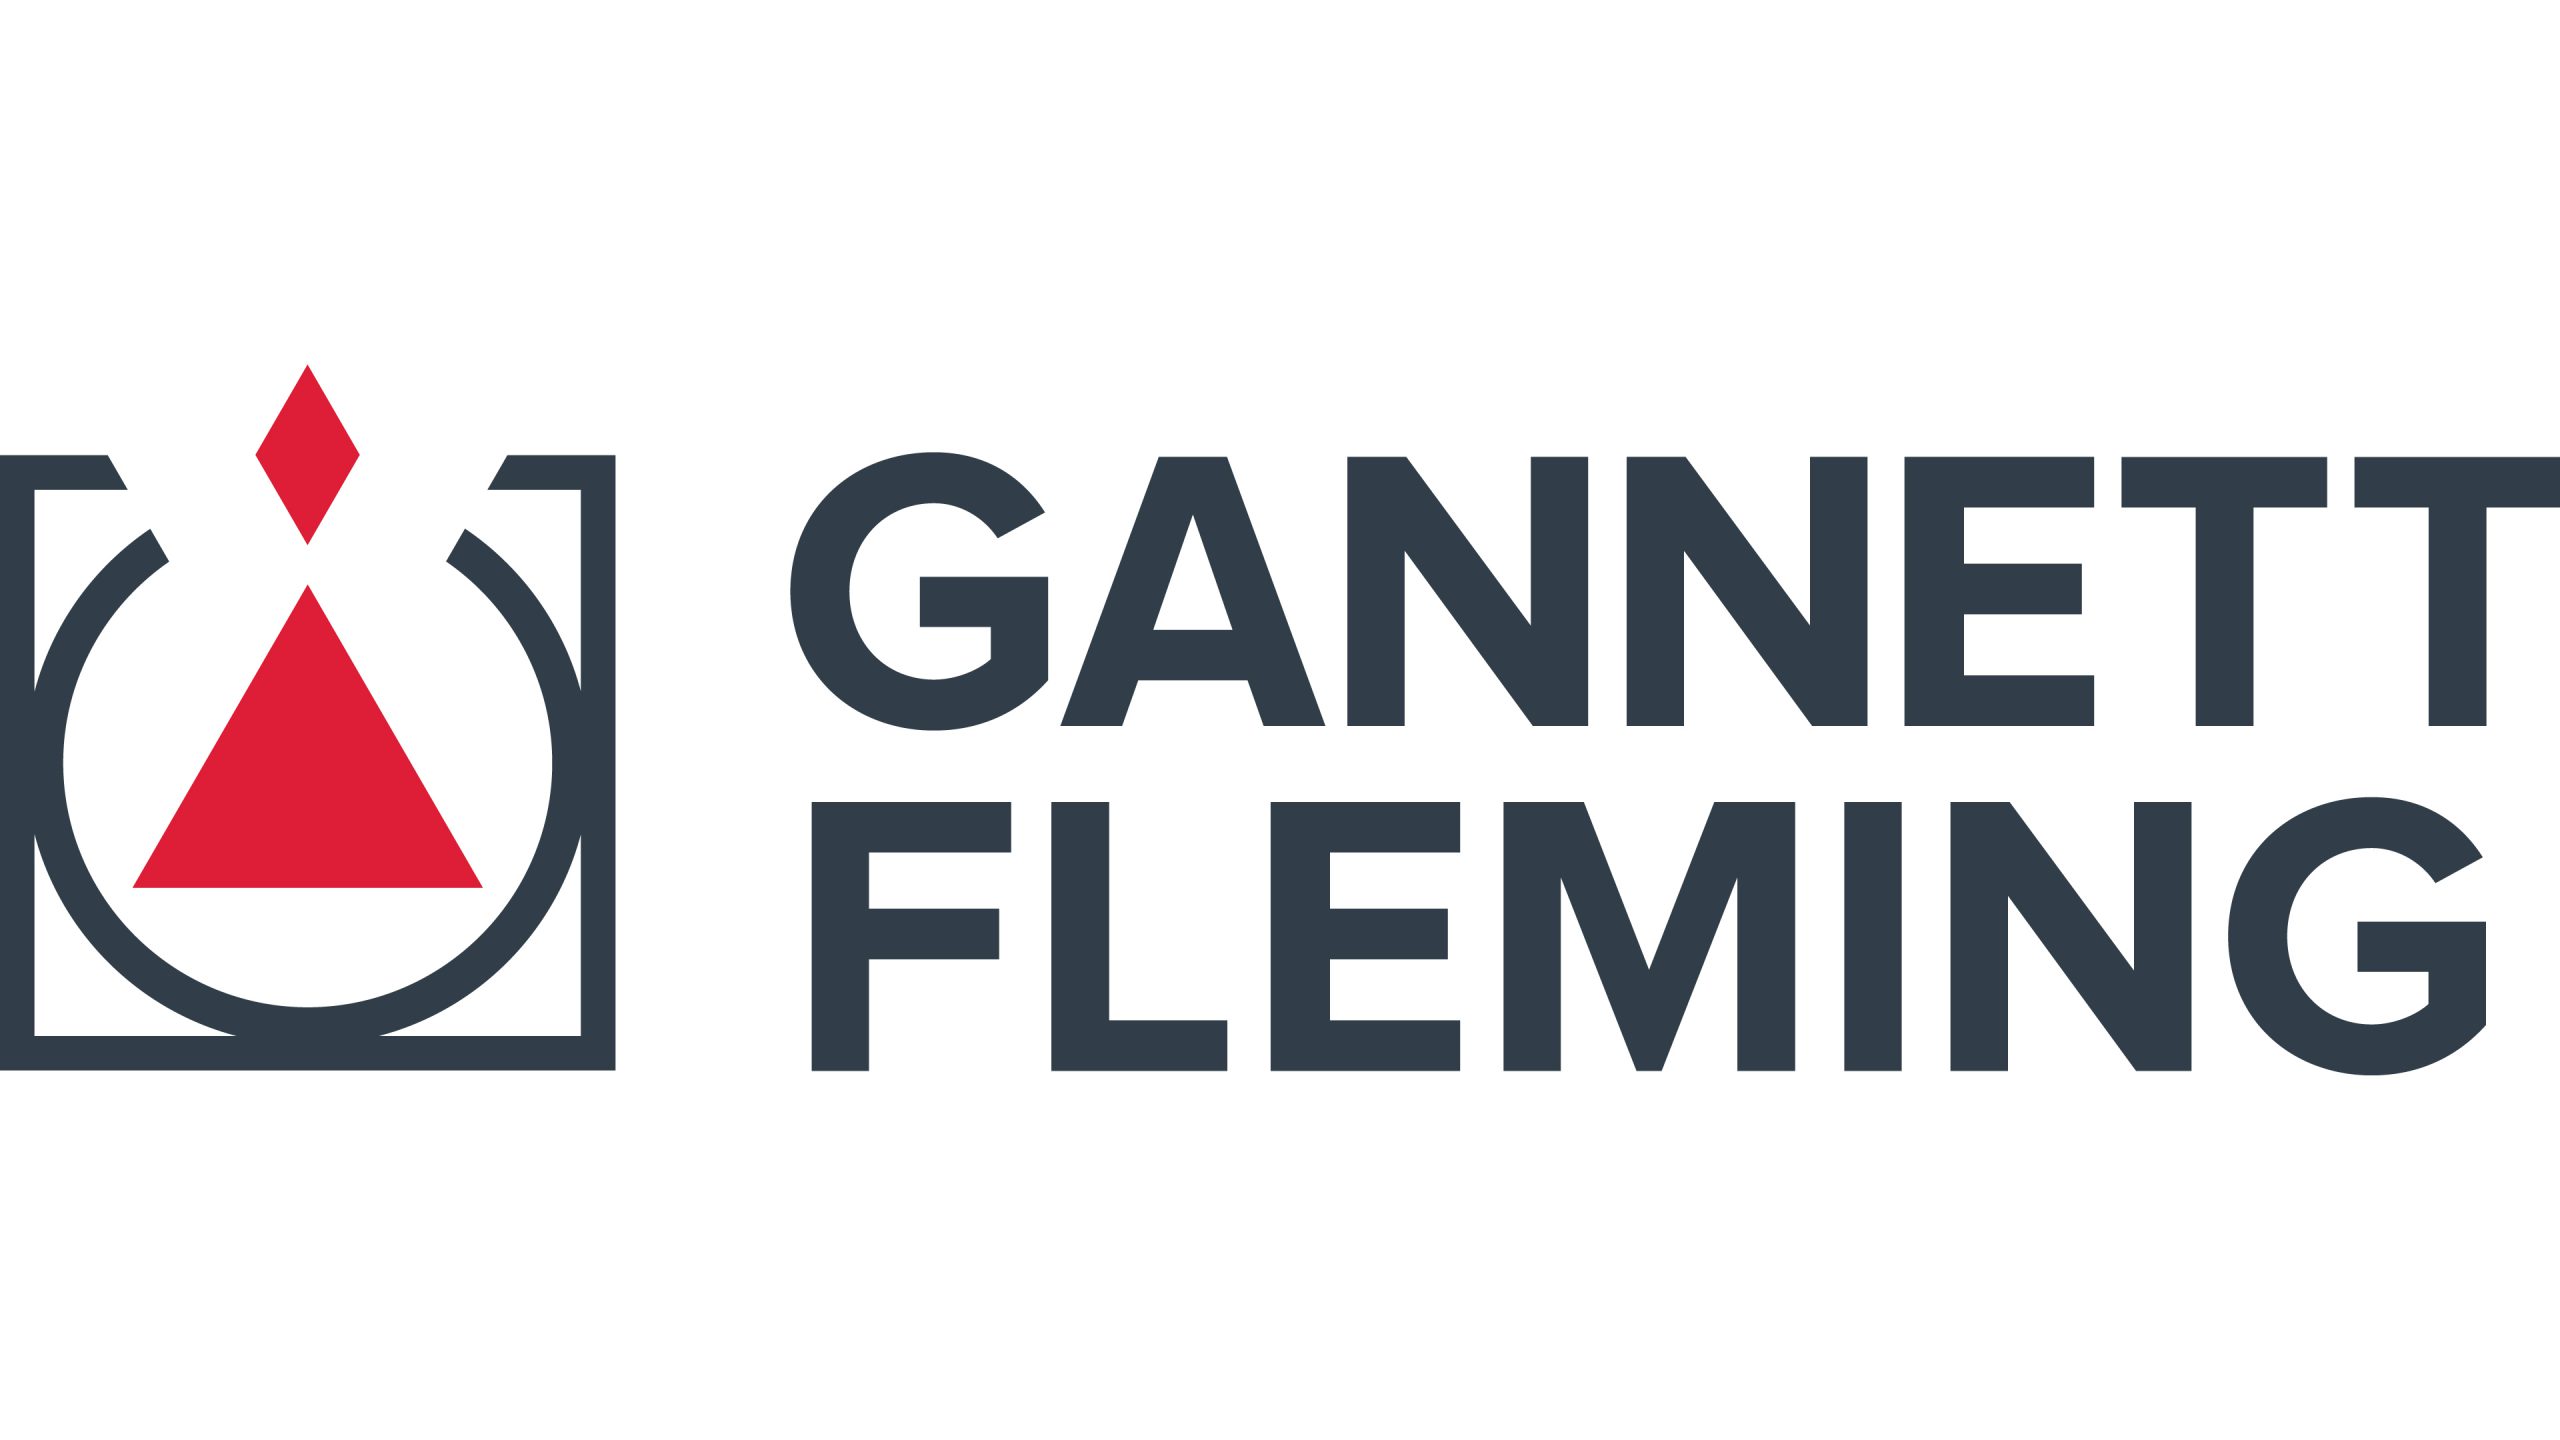 Gannett Fleming